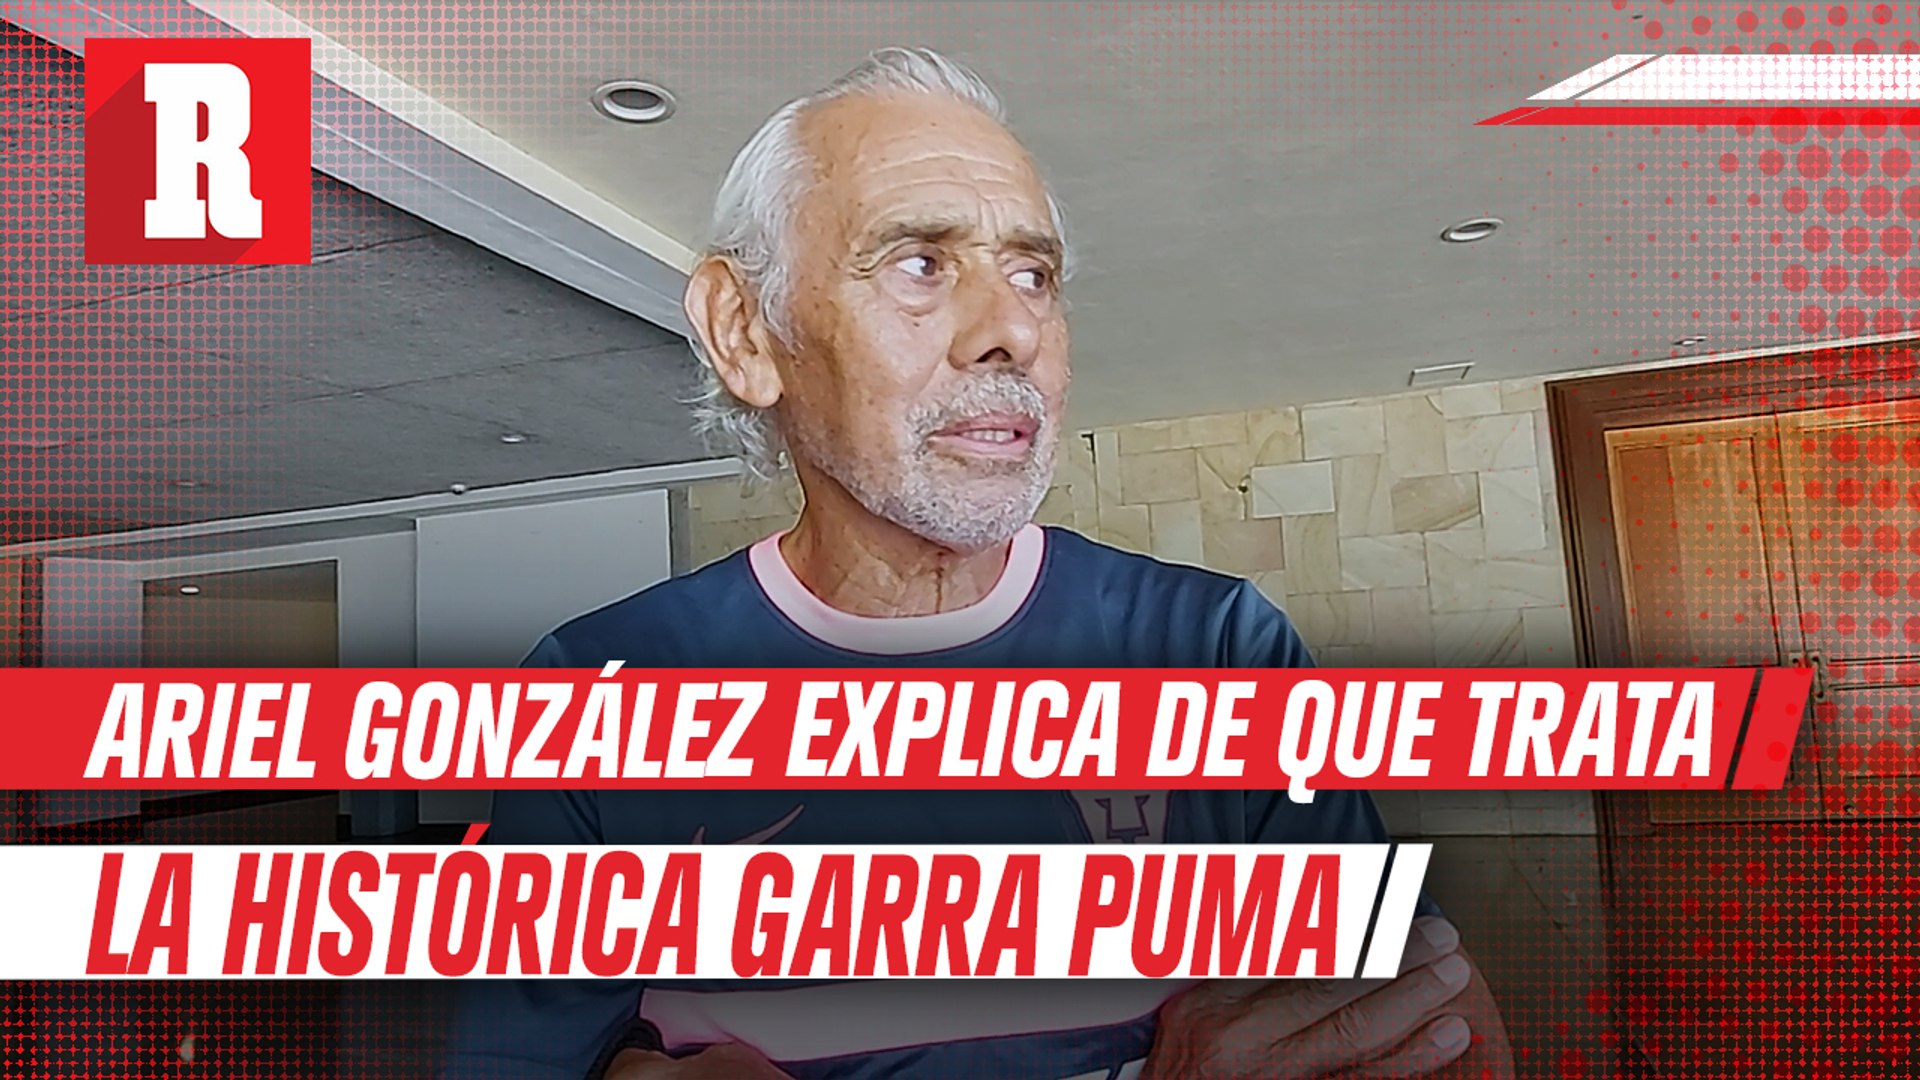 Ariel González sobre Pumas: 'La garra puma es la característica histórica  del equipo' - Vídeo Dailymotion